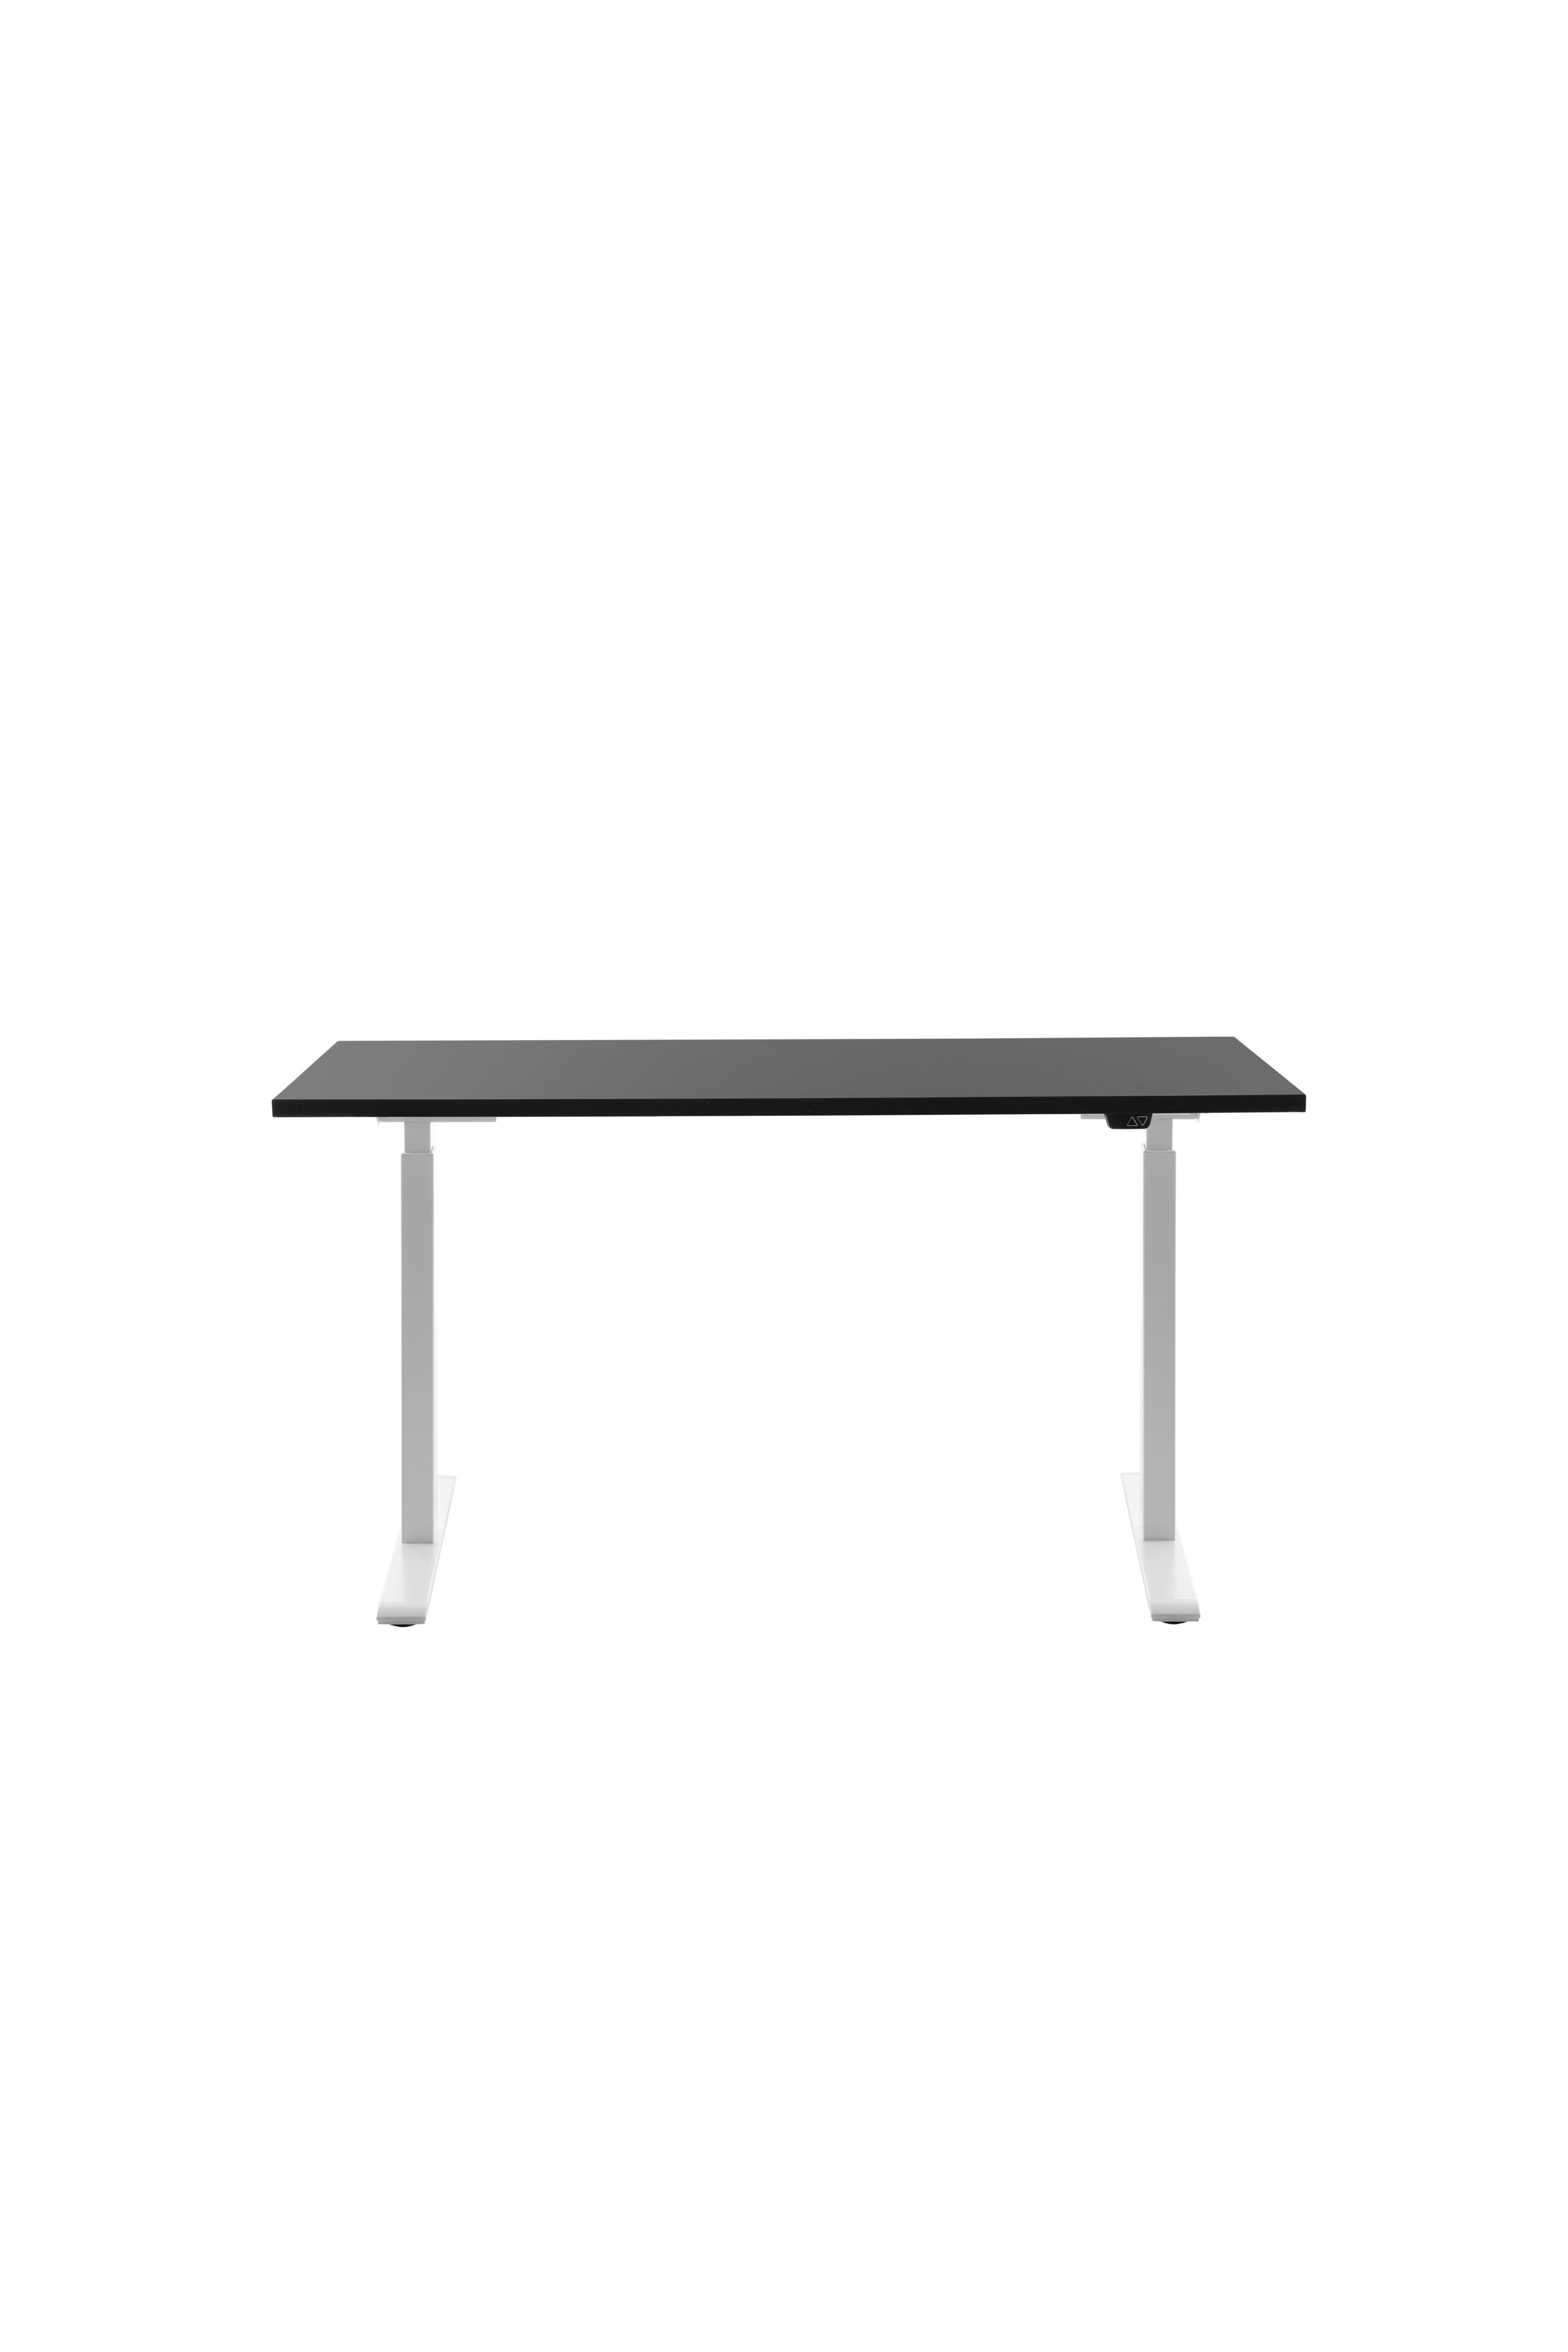 Höhenverstellbarer Schreibtisch 140x60 cm - Gestell weiss - Platte schwarz